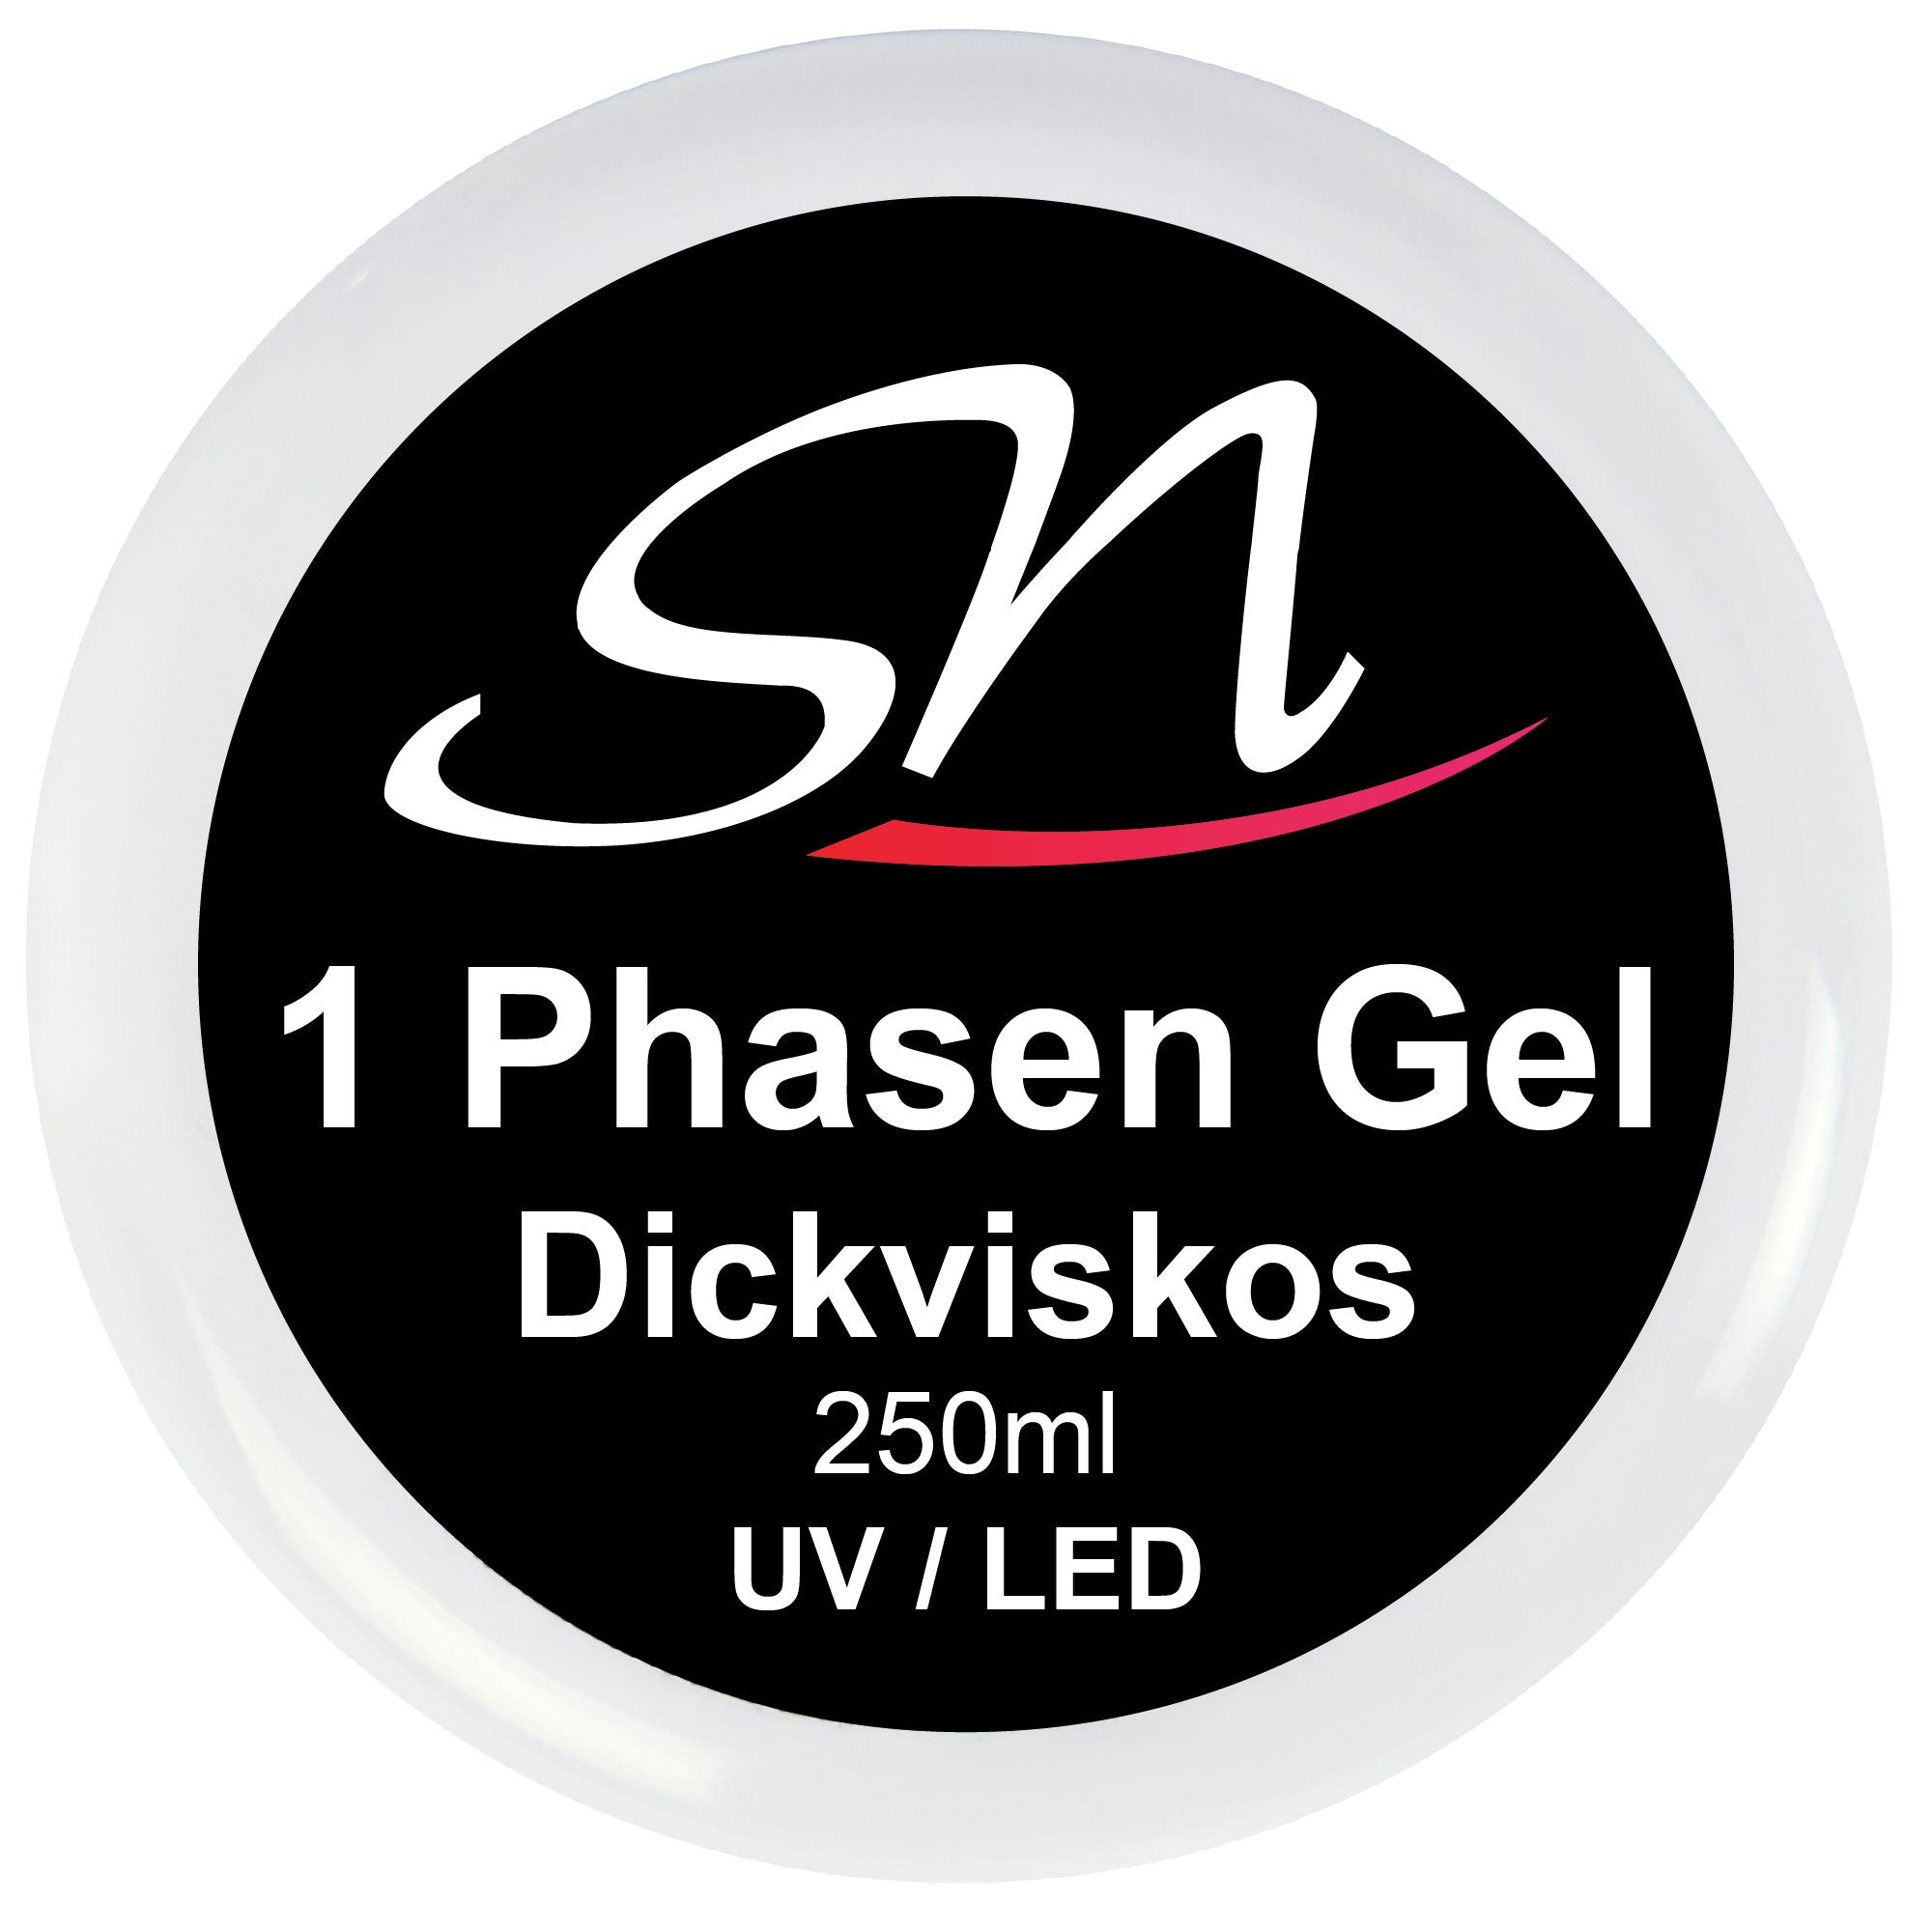 SN 1 Phasen Gel dickviskos UV / LED Nagelgel 250ml